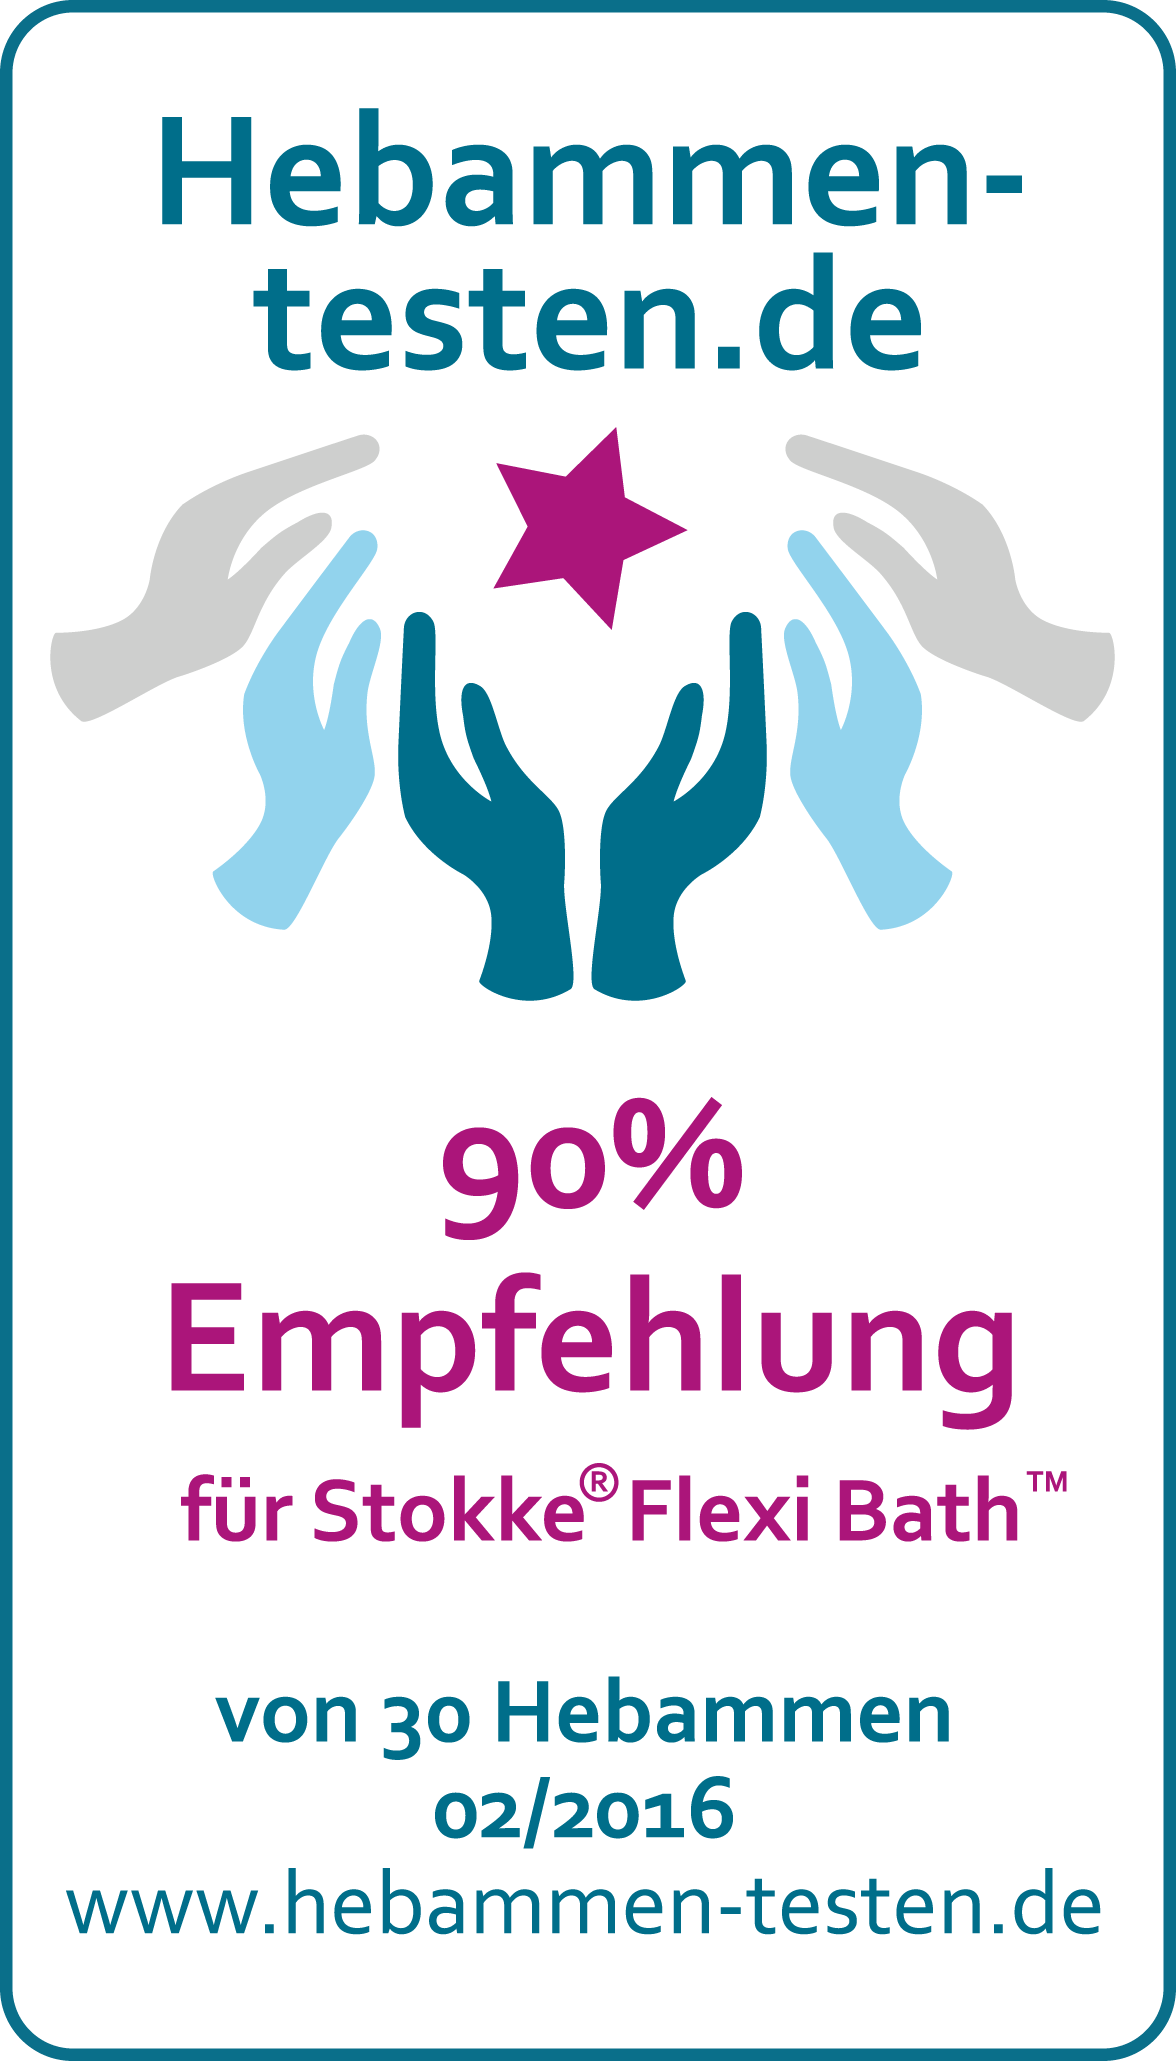 Siegel Hebammen-testen.de 90 % Empfehlung für Stokke Flexi Bath 30 Hebammen